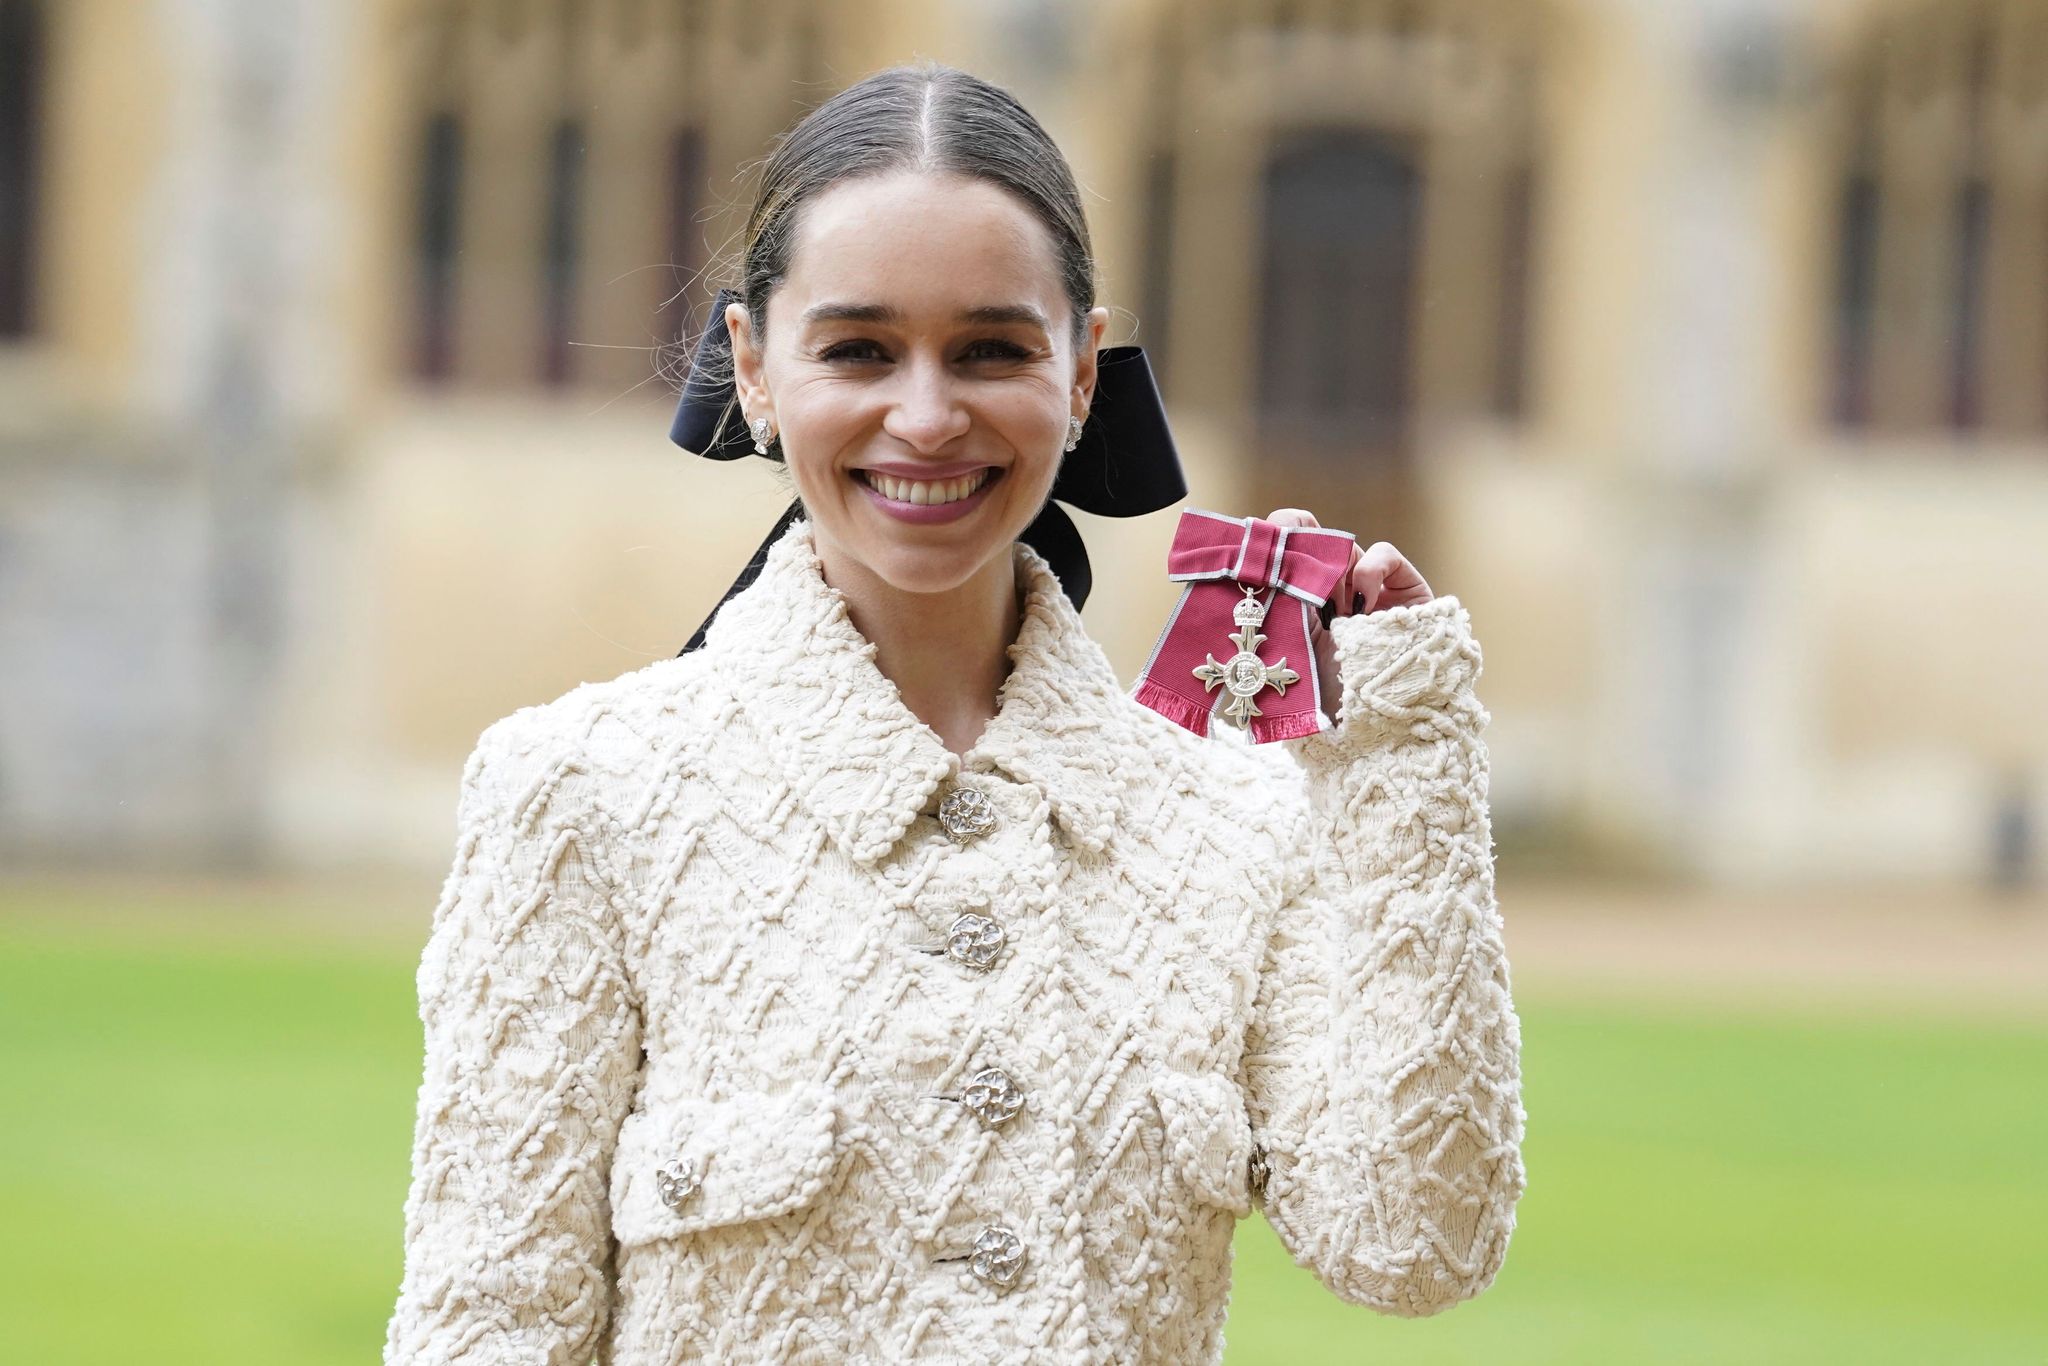 Emilia Clarke zeigt ihren Orden, nachdem sie und ihre Mutter von Prinz William auf Schloss Windsor zu Mitgliedern des Ordens des Britischen Empire ernannt wurden.